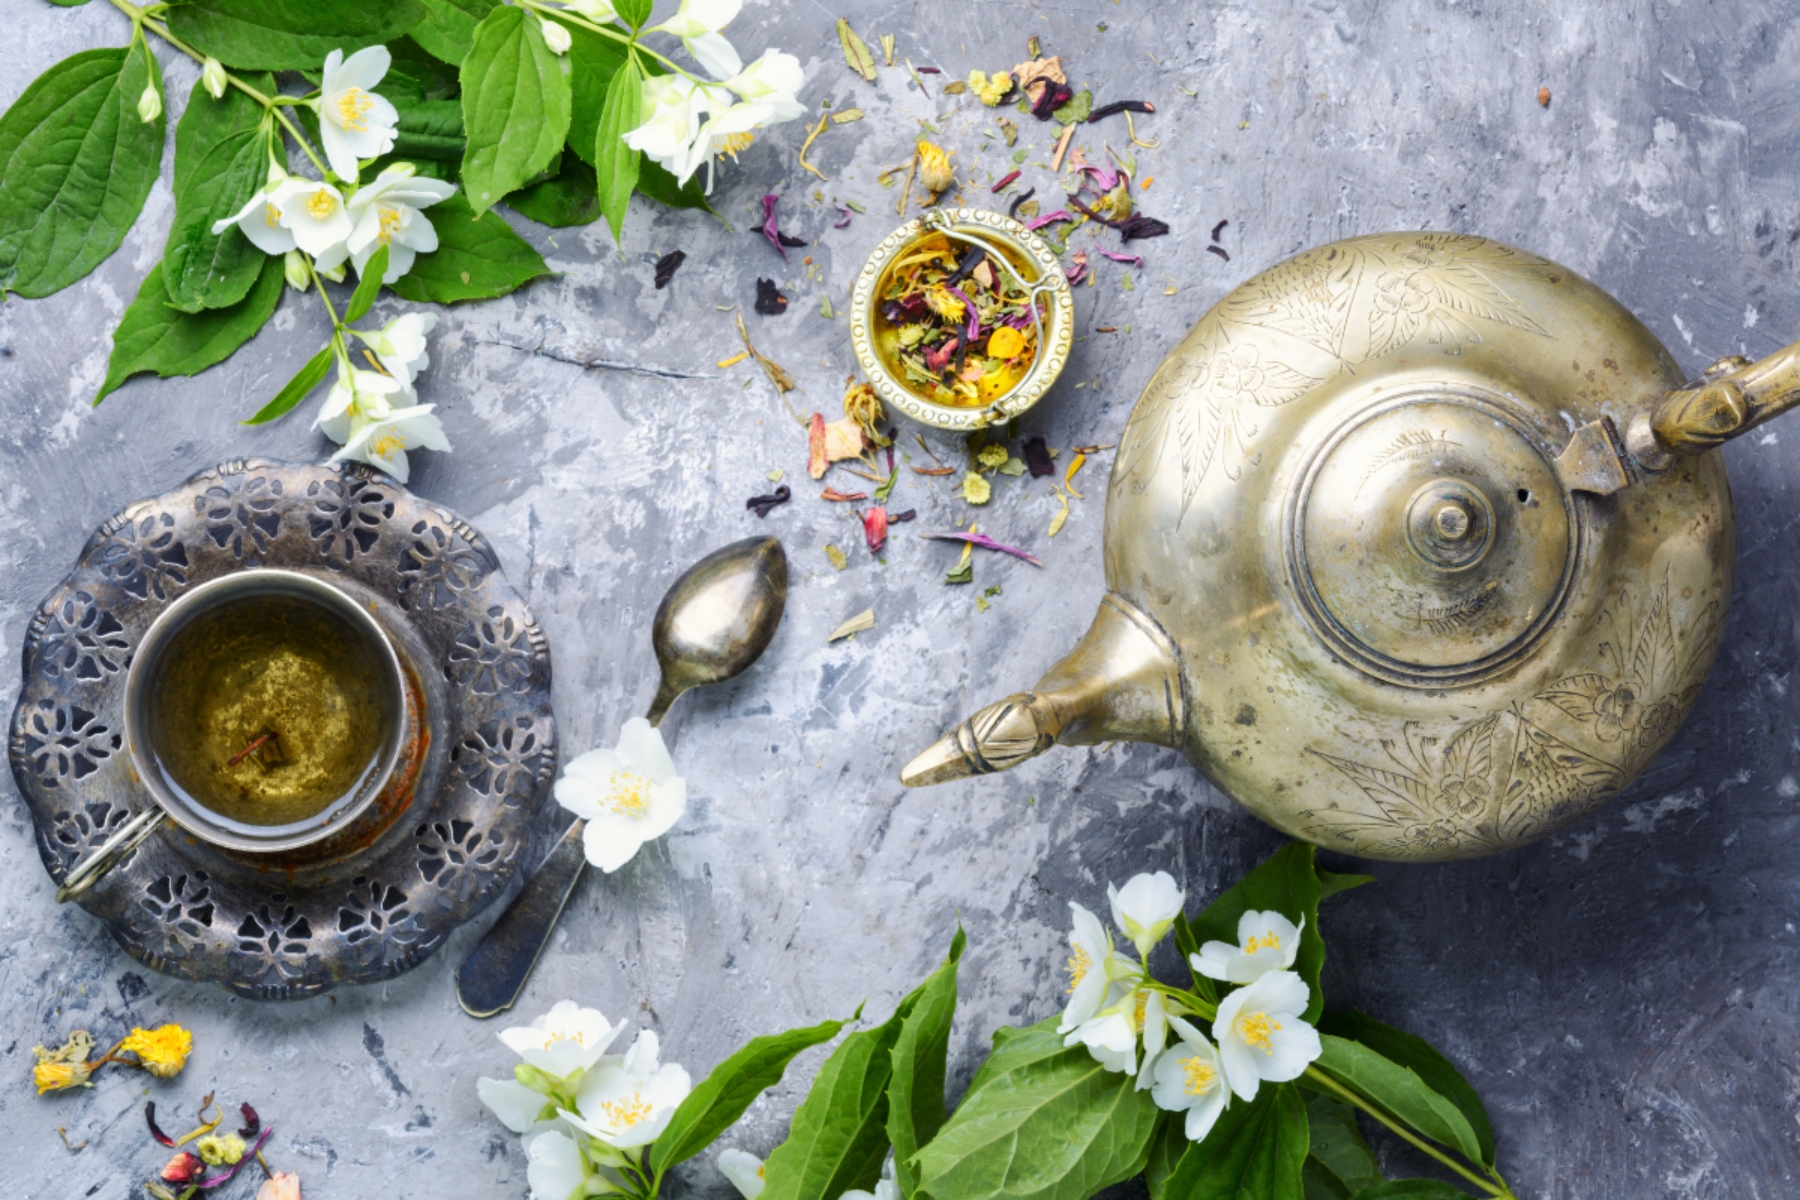 Πράσινο τσάι: Ένα υγιεινό υποκατάστατο των ενεργειακών ποτών